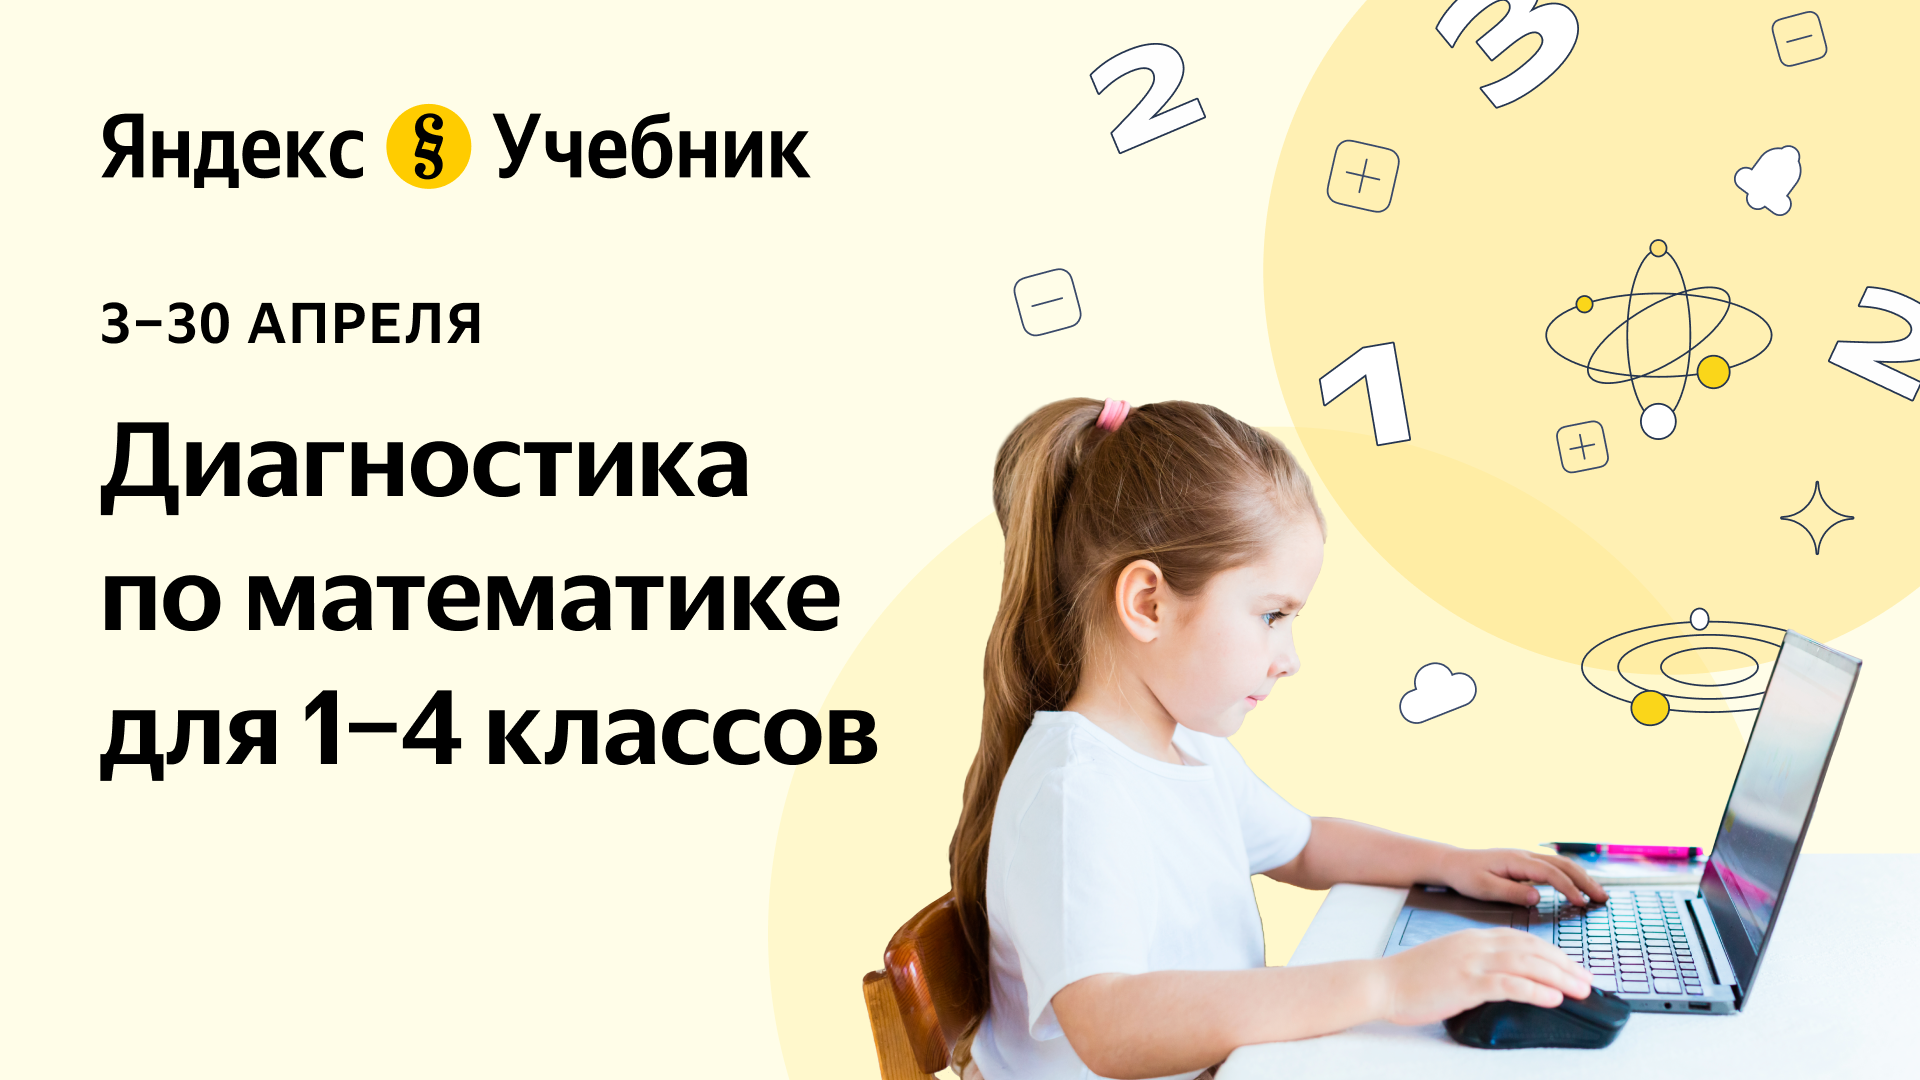 Технологическая образовательная платформа Яндекс Учебник проводит цикл бесплатных практико-ориентированных диагностик.